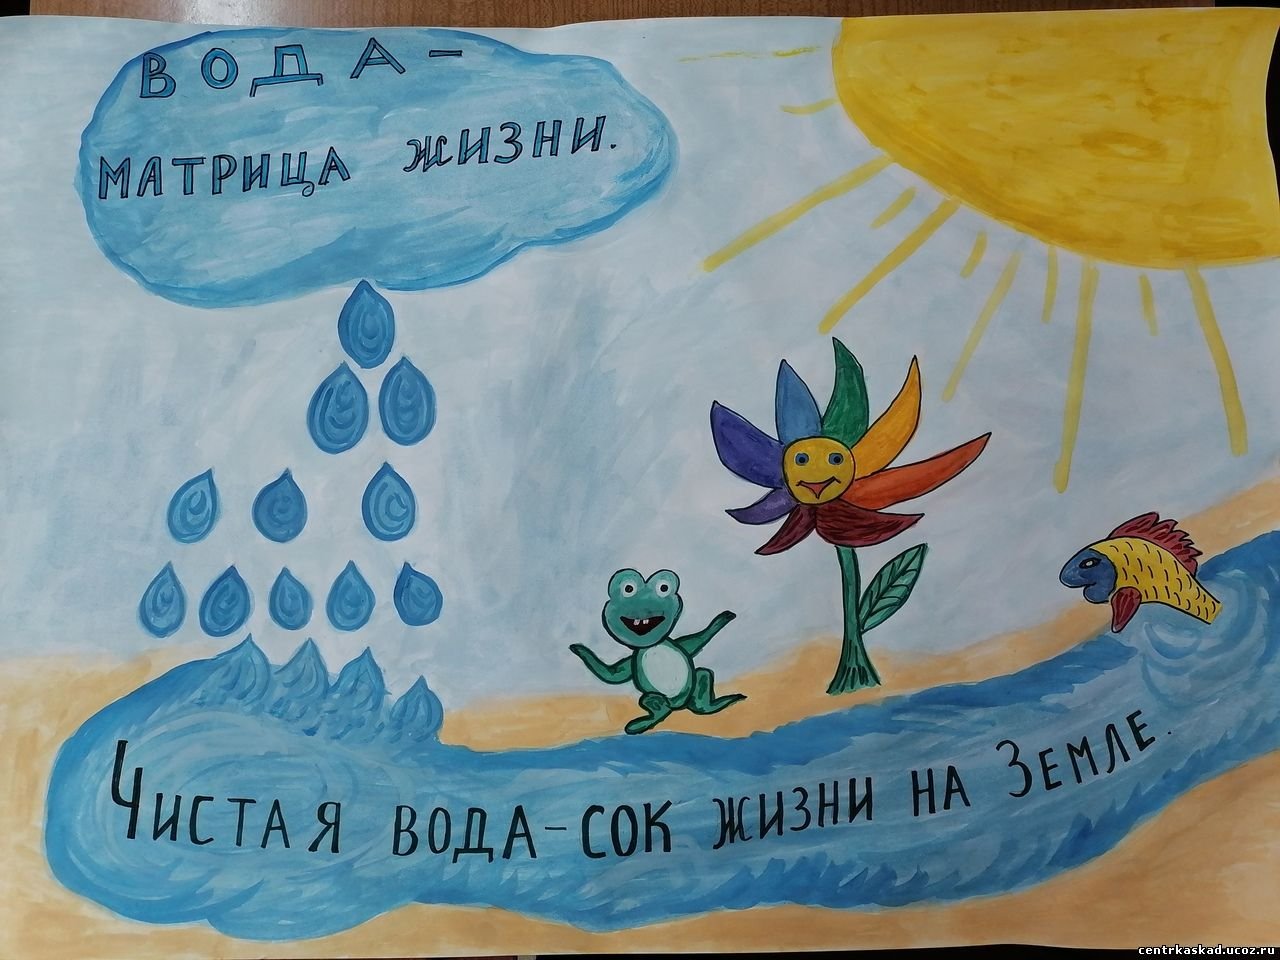 Песня берегите воду. Плакат про воду. Всемирный день воды плакат. Плакат вода источник жизни. Экологический плакат вода.